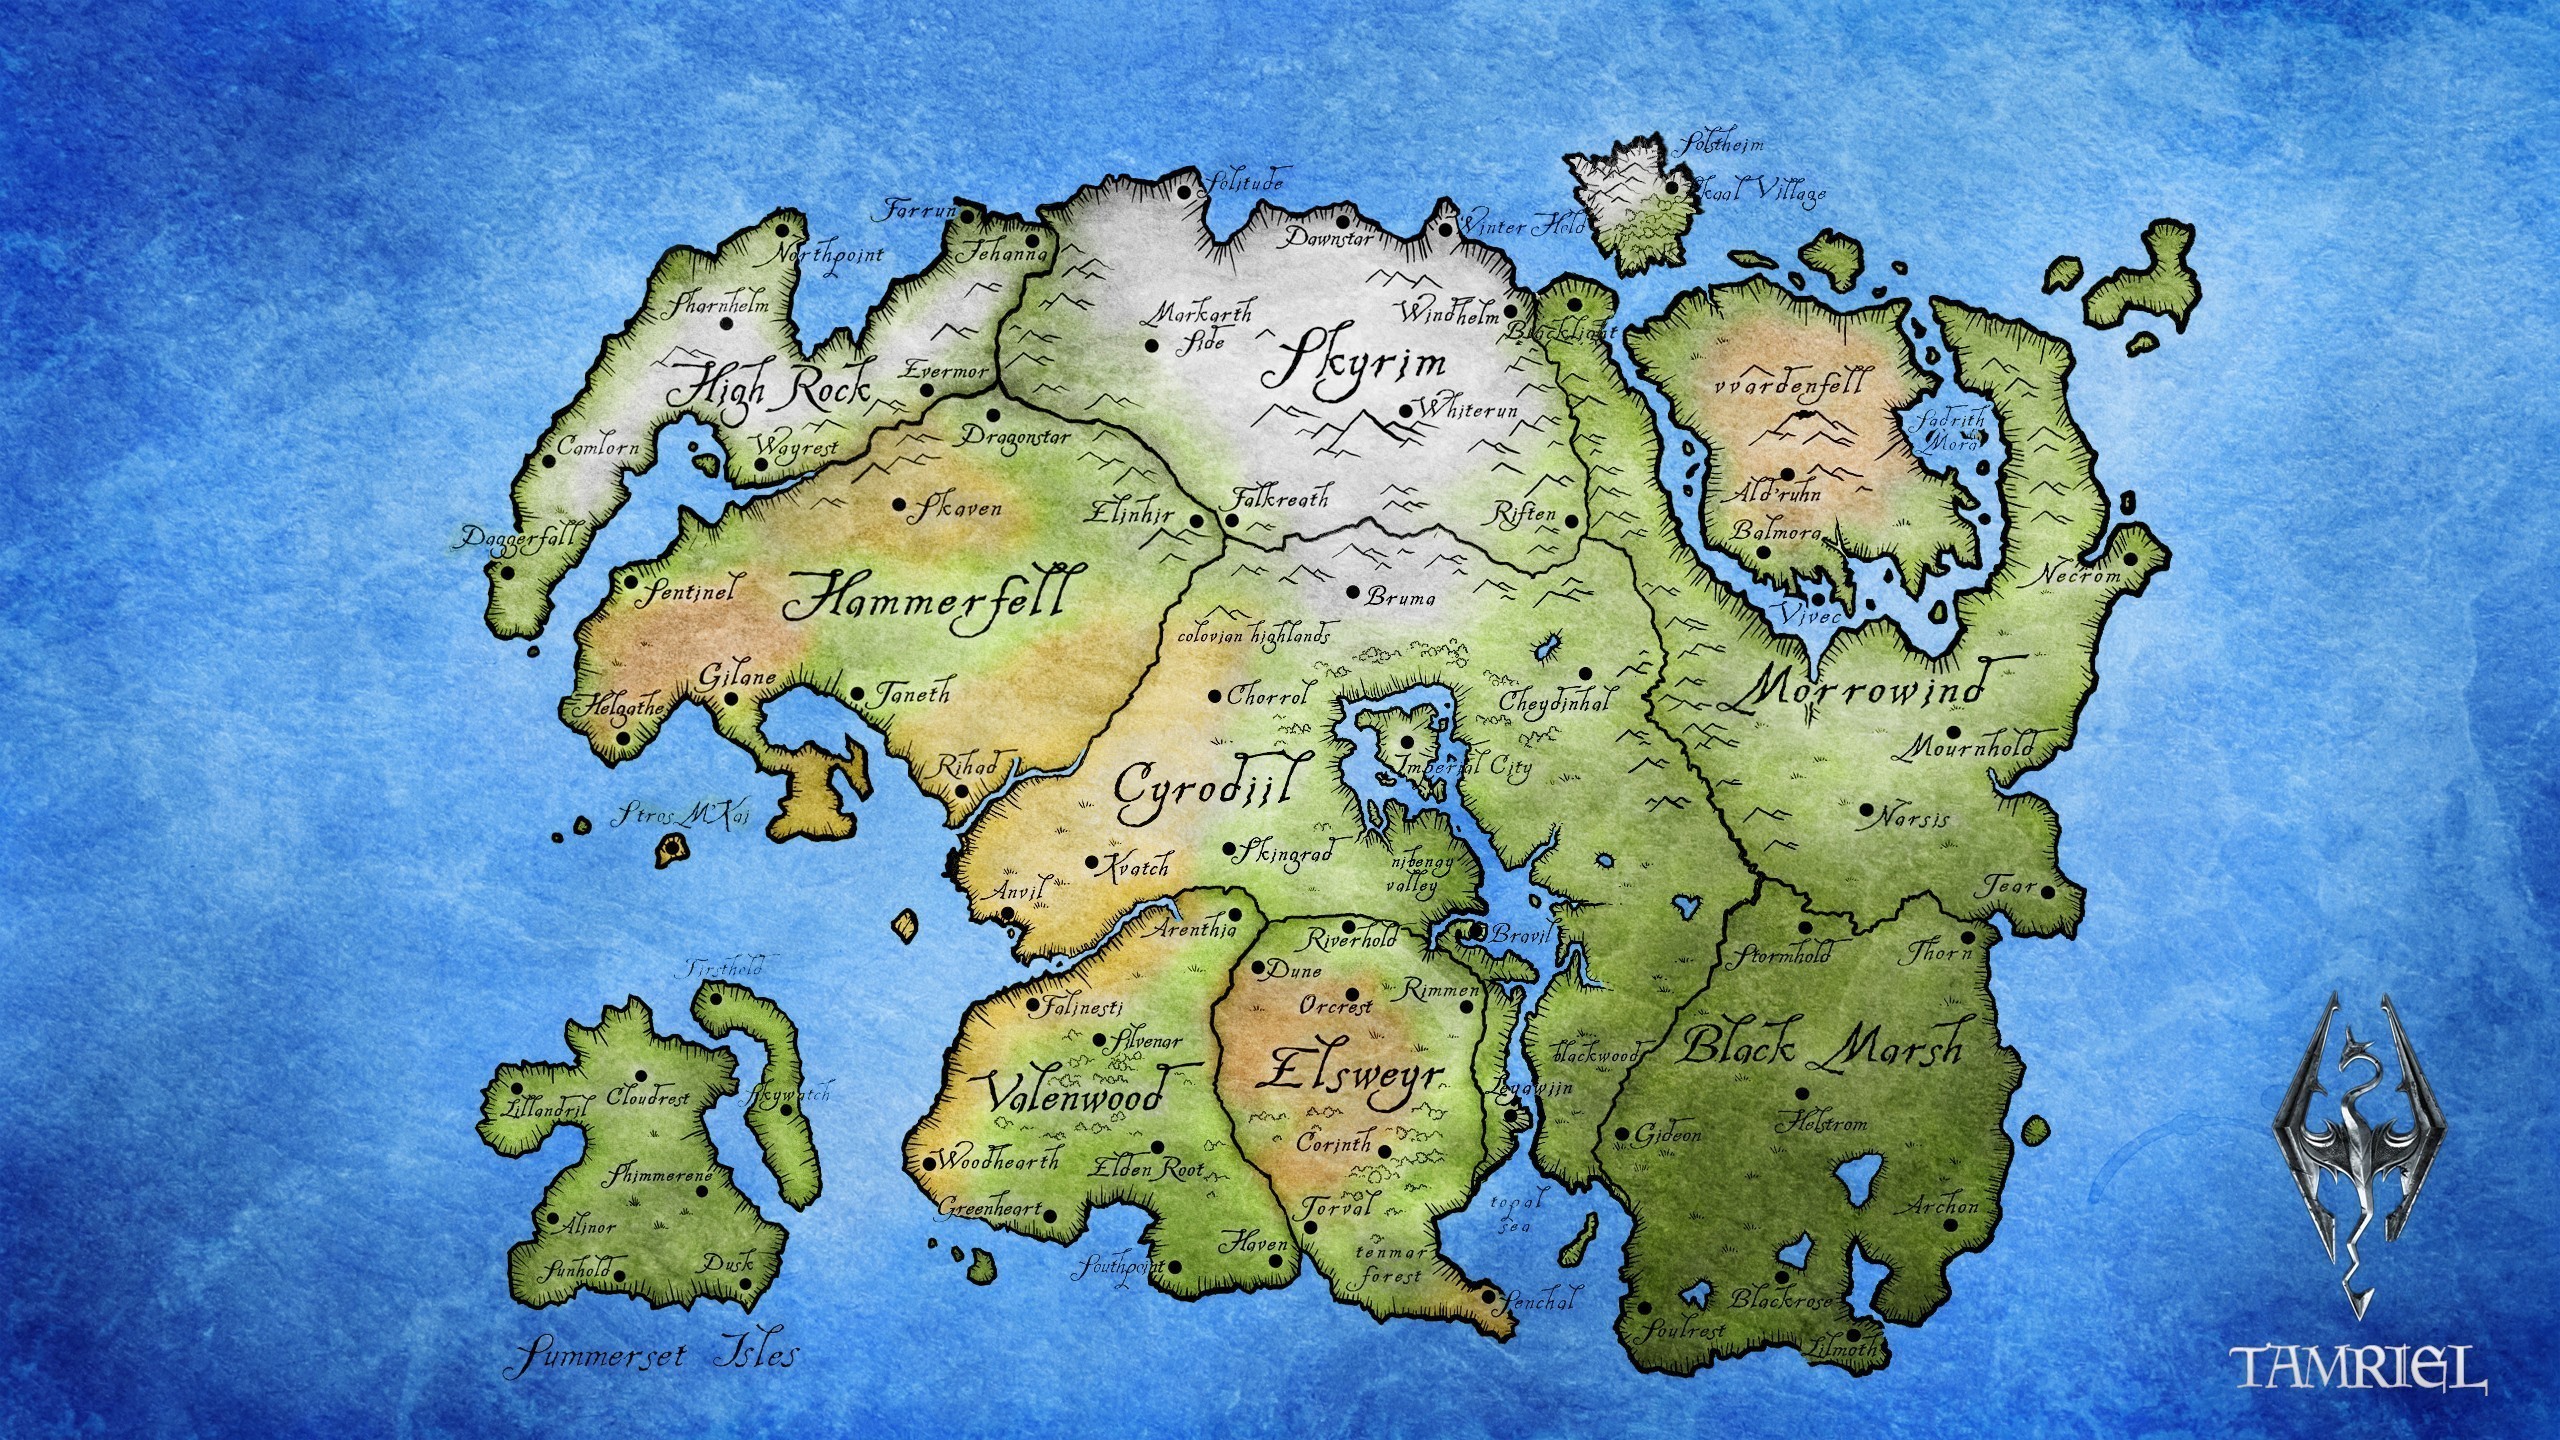 2560x1440  Elder Scrolls, Map, The Elder Scrolls V: Skyrim, The Elder  Scrolls IV: Oblivion, The Elder Scrolls III: Morrowind, Tamriel Wallpapers  HD / Desktop ...